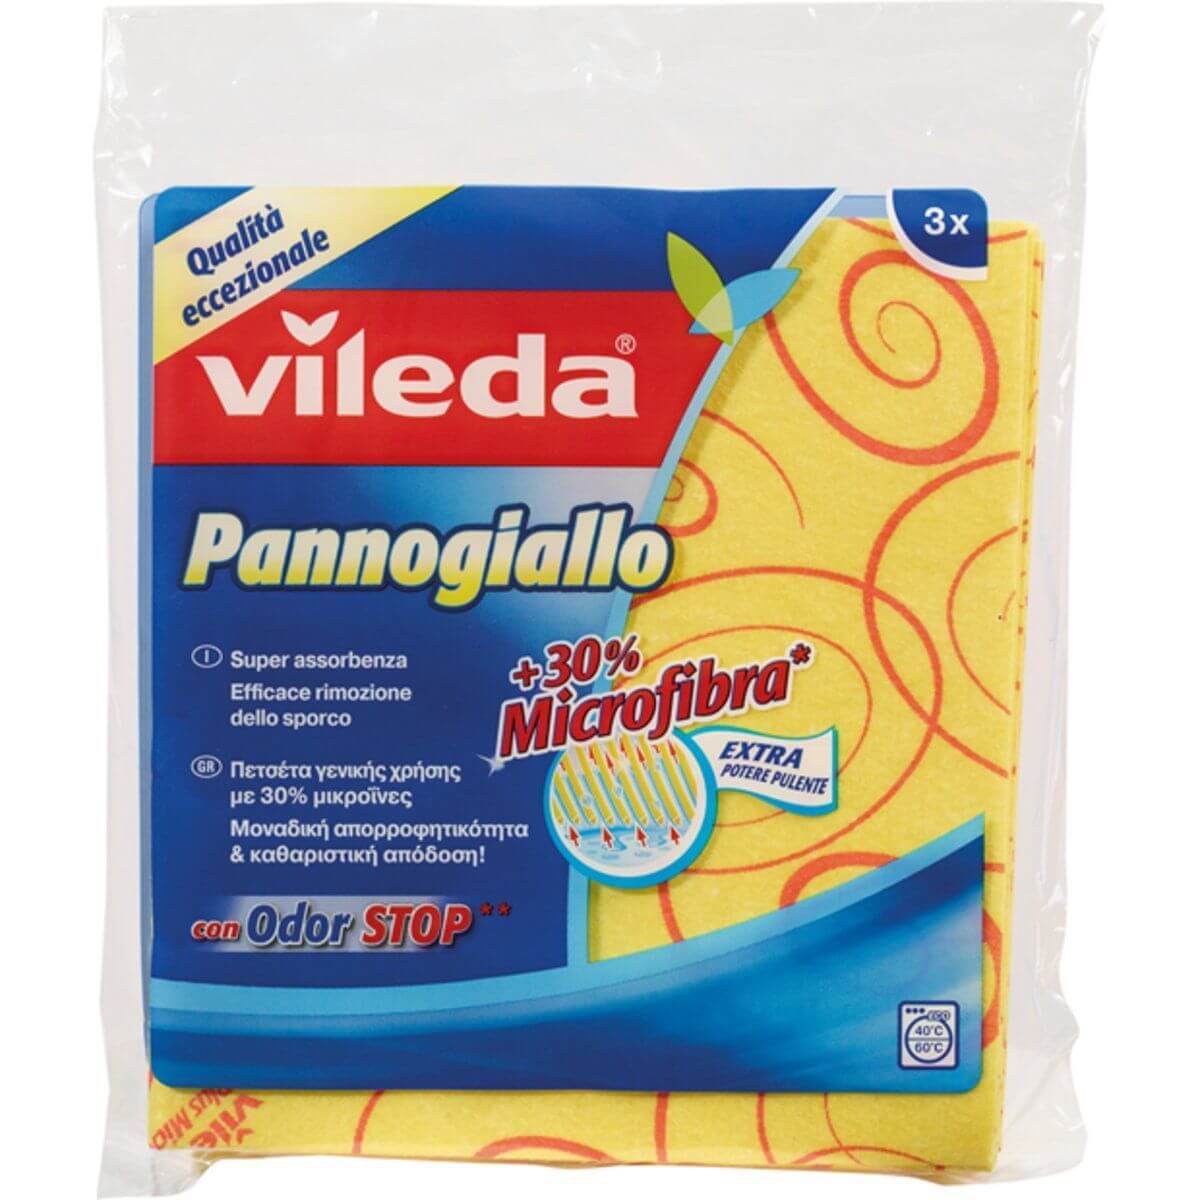 VILEDA PANNOGIALLO PZ.3